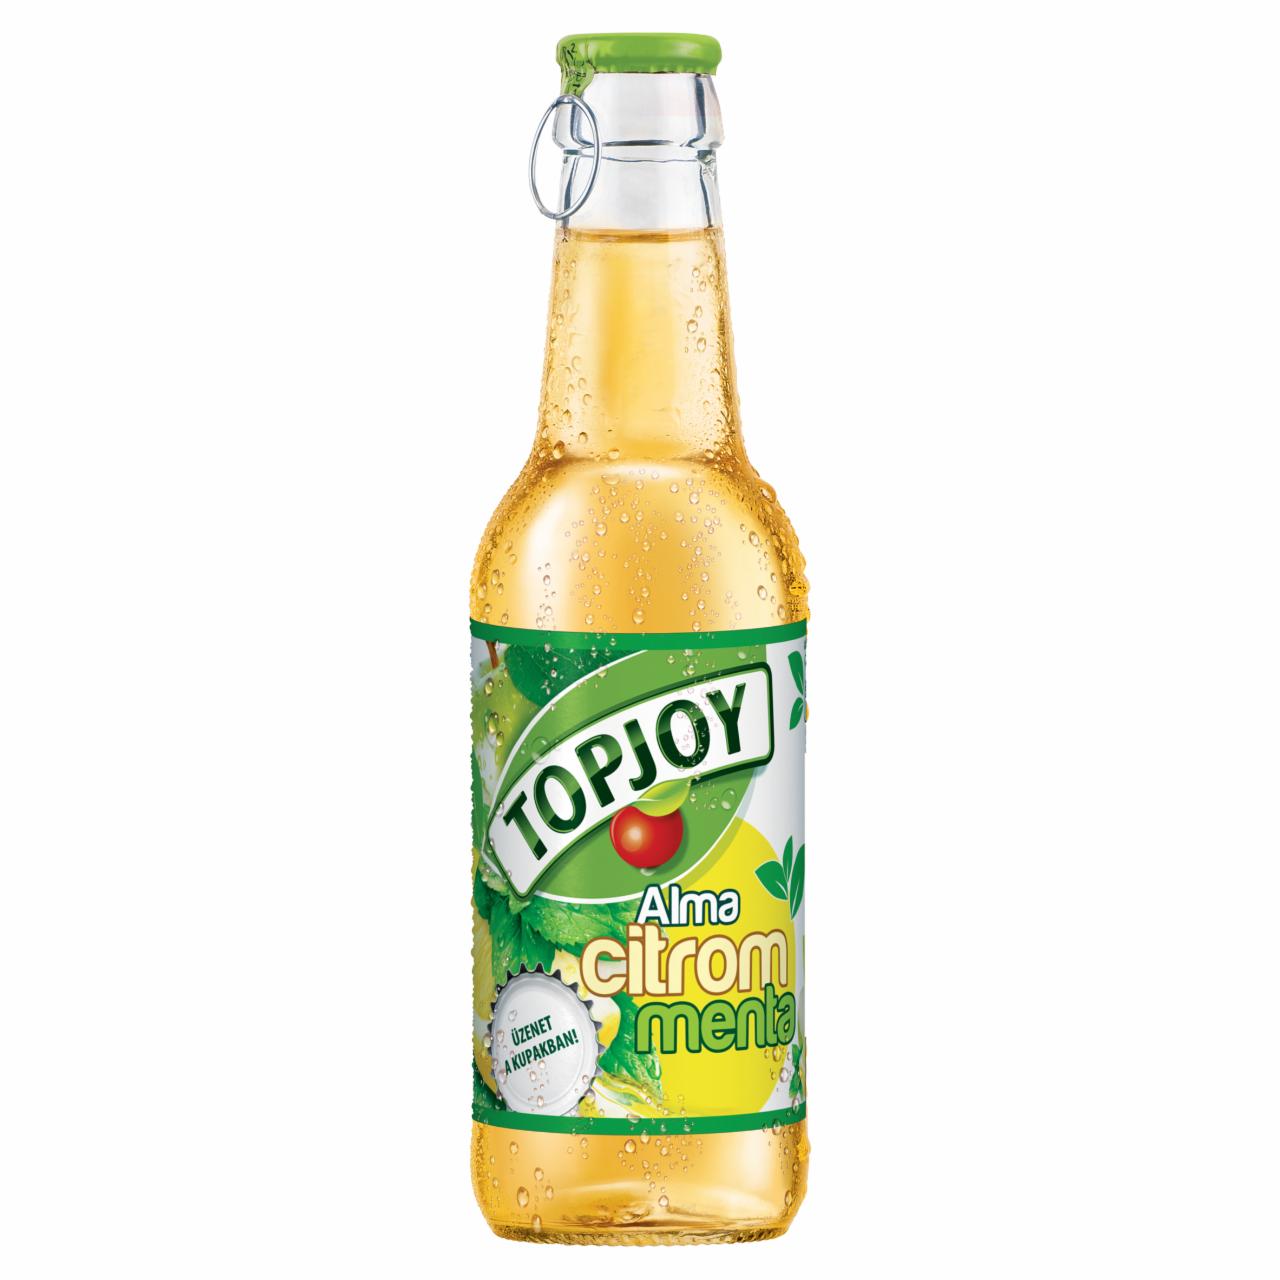 Képek - Topjoy alma-citrom-menta ital 250 ml